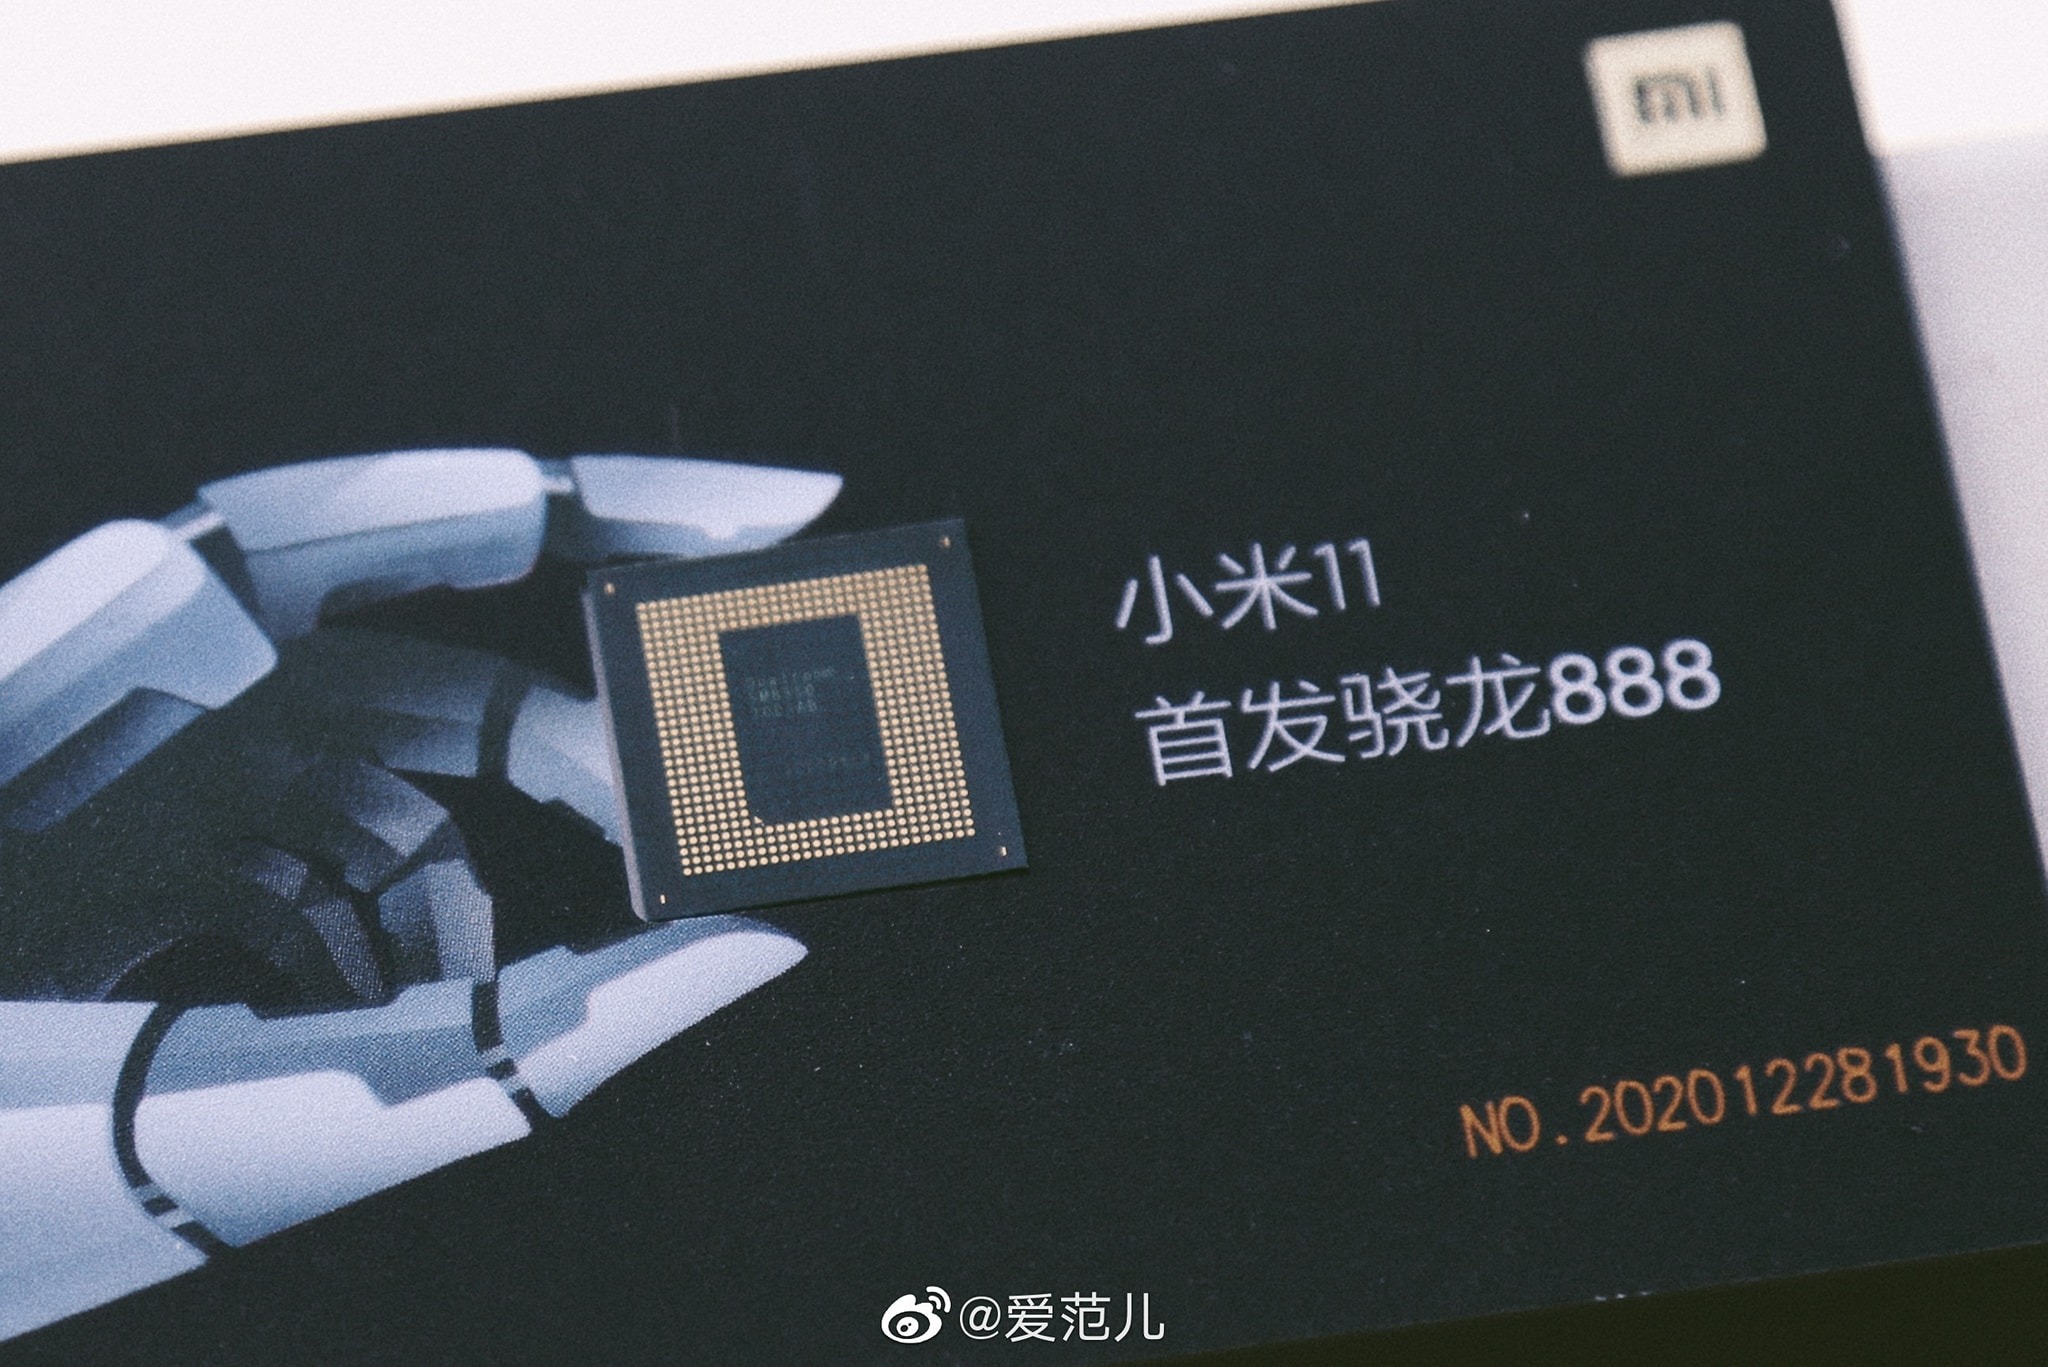 Sforum - Trang thông tin công nghệ mới nhất photo-1-16087096984021075490592 "Chất chơi" như Xiaomi: Gửi thư mời ra mắt Mi 11, tặng kèm cả con chip Snapdragon 888 cho khách mời 